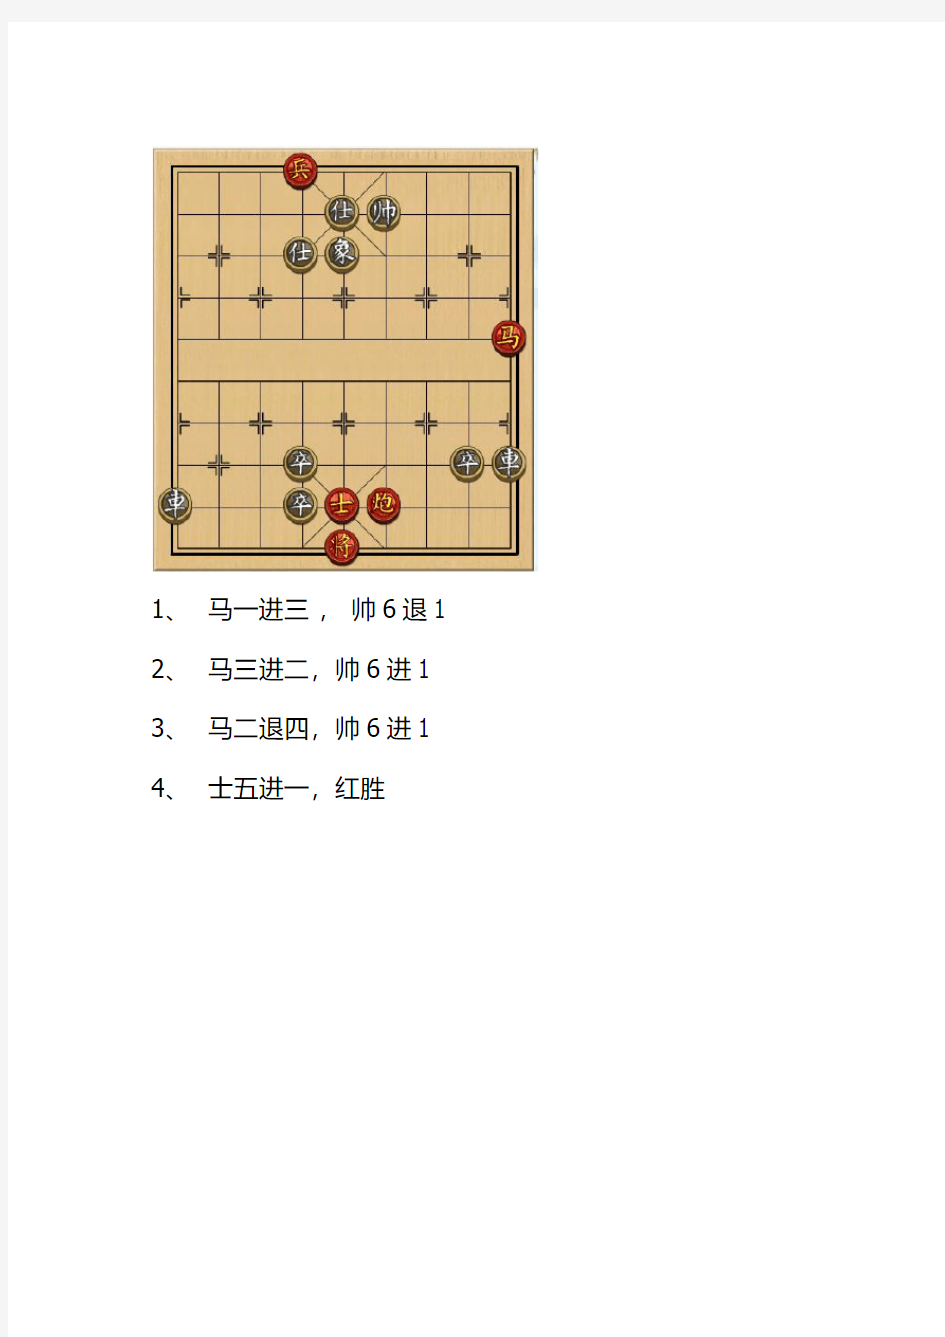 4399小游戏中国象棋残局30关